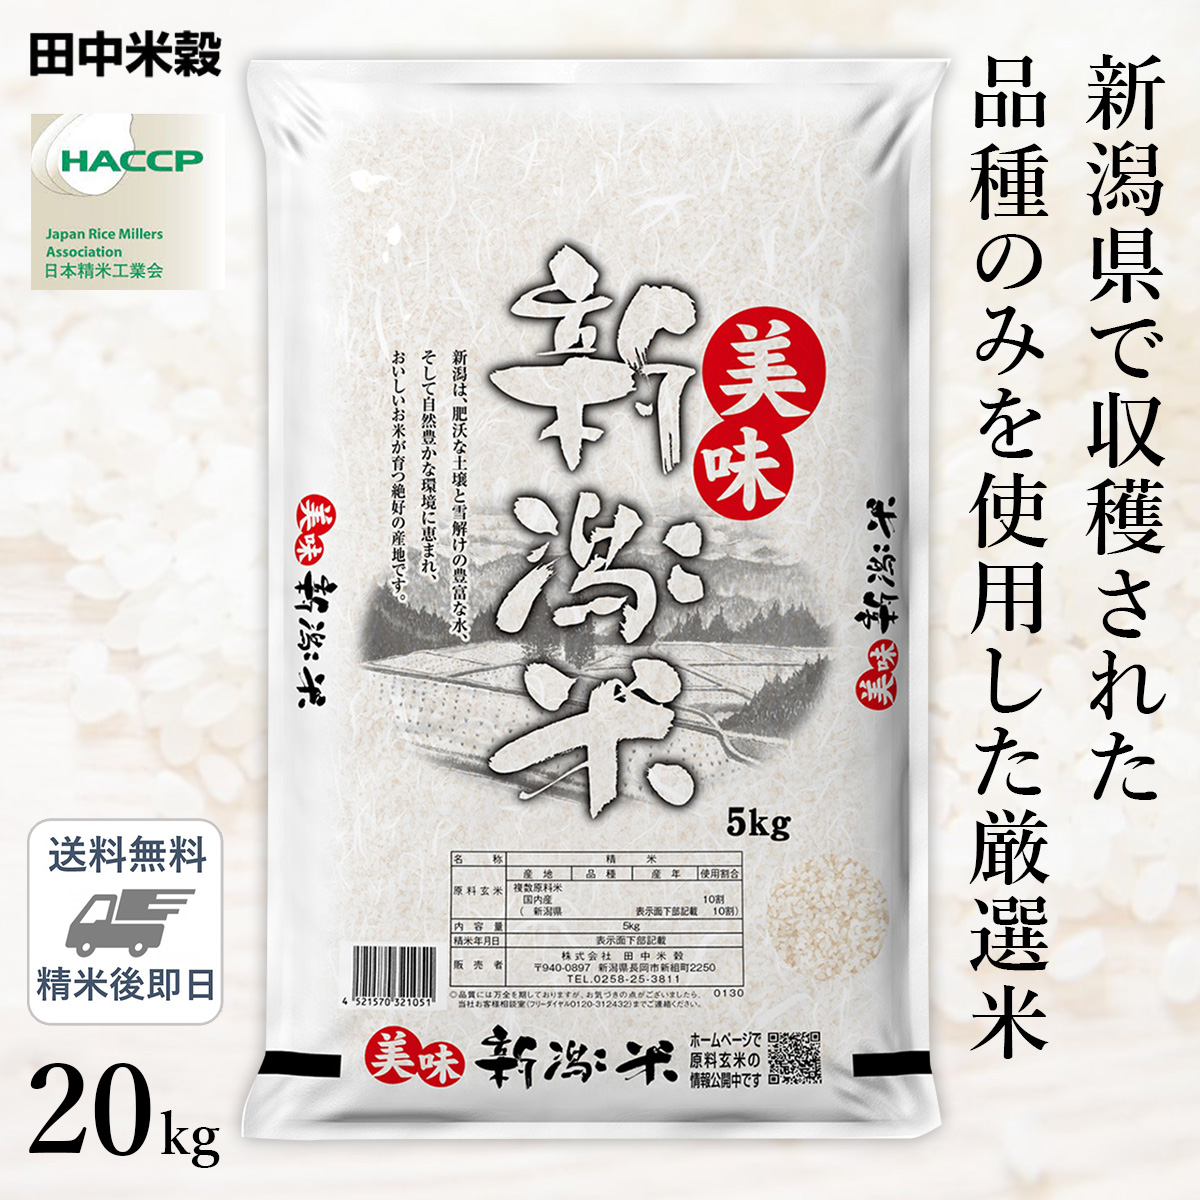 □【送料無料】令和5年産 新潟県産 美味新潟米 20kg(5kg×4袋) 精米仕立て